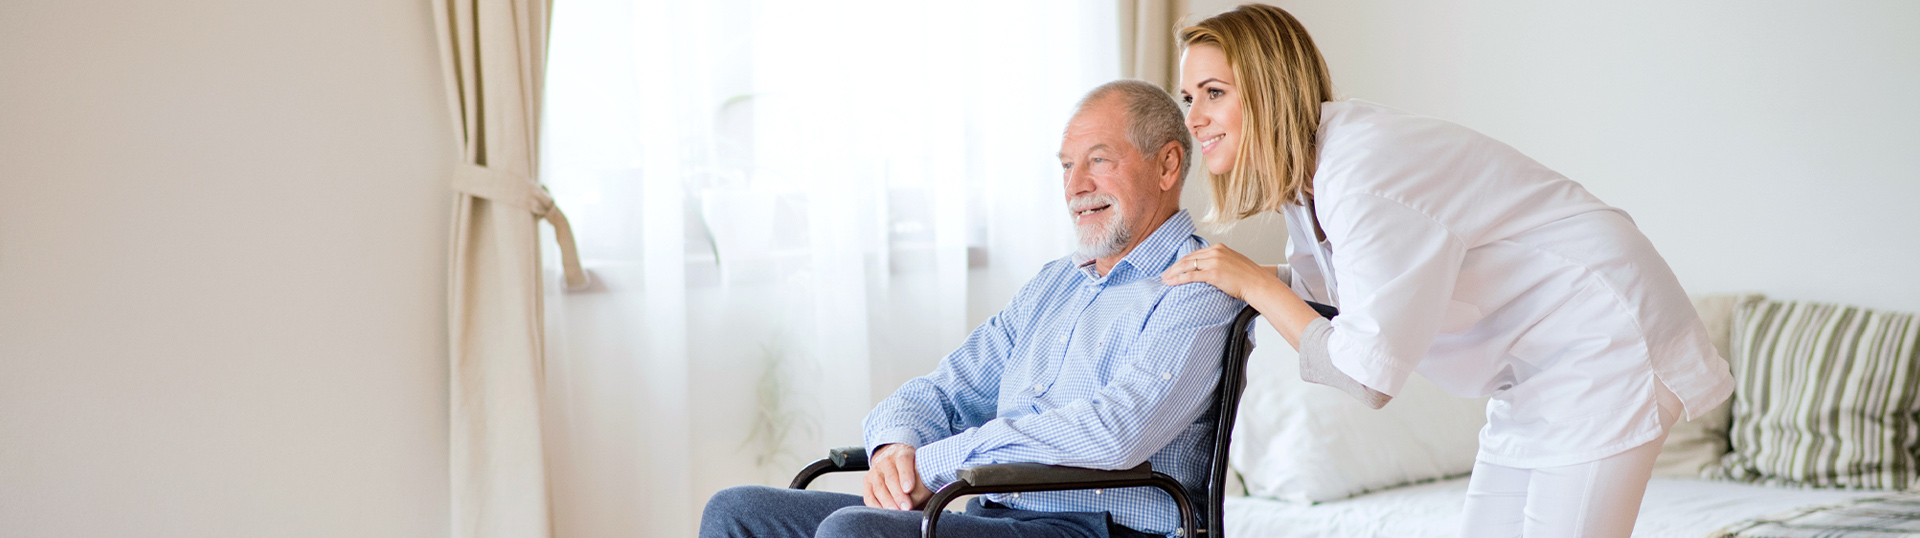 Pflegerin beugt sich zu älterem Mann im Rollstuhl und beide lächeln